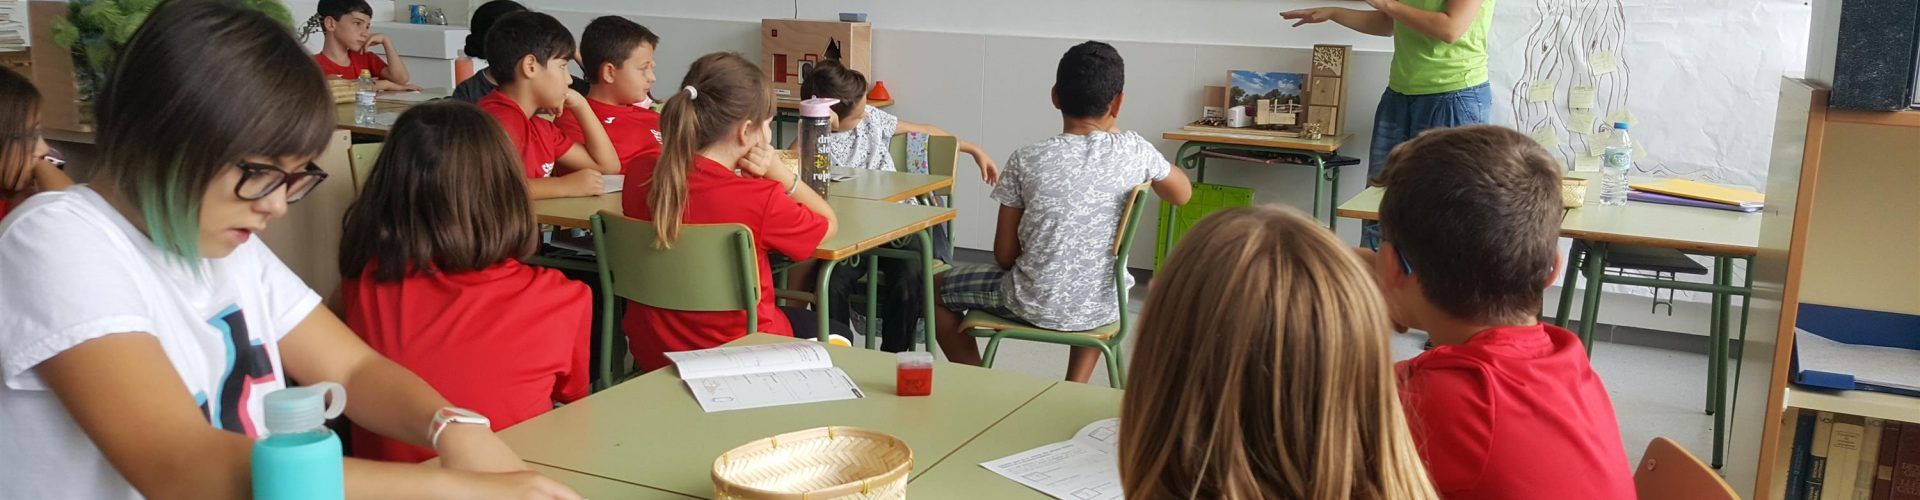 La Diputació de Tarragona reprèn els tallers d’educació ambiental sobre biomassa als centres educatius de la demarcació